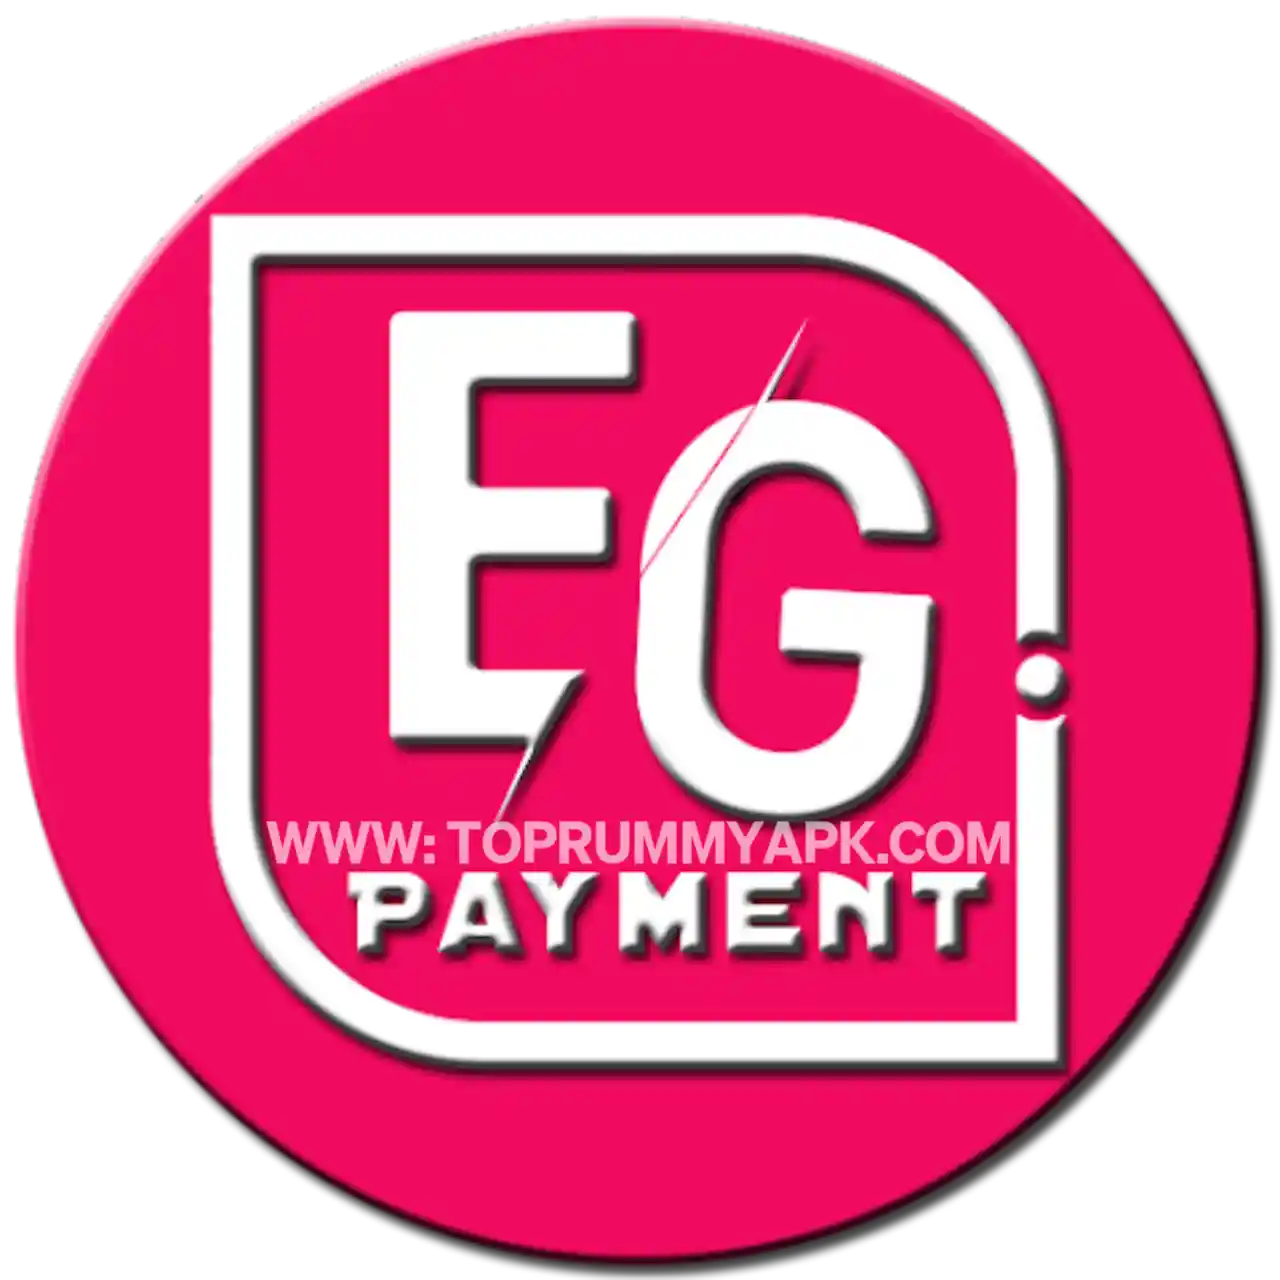 Eg Payment Apk Download - Top Rummy App